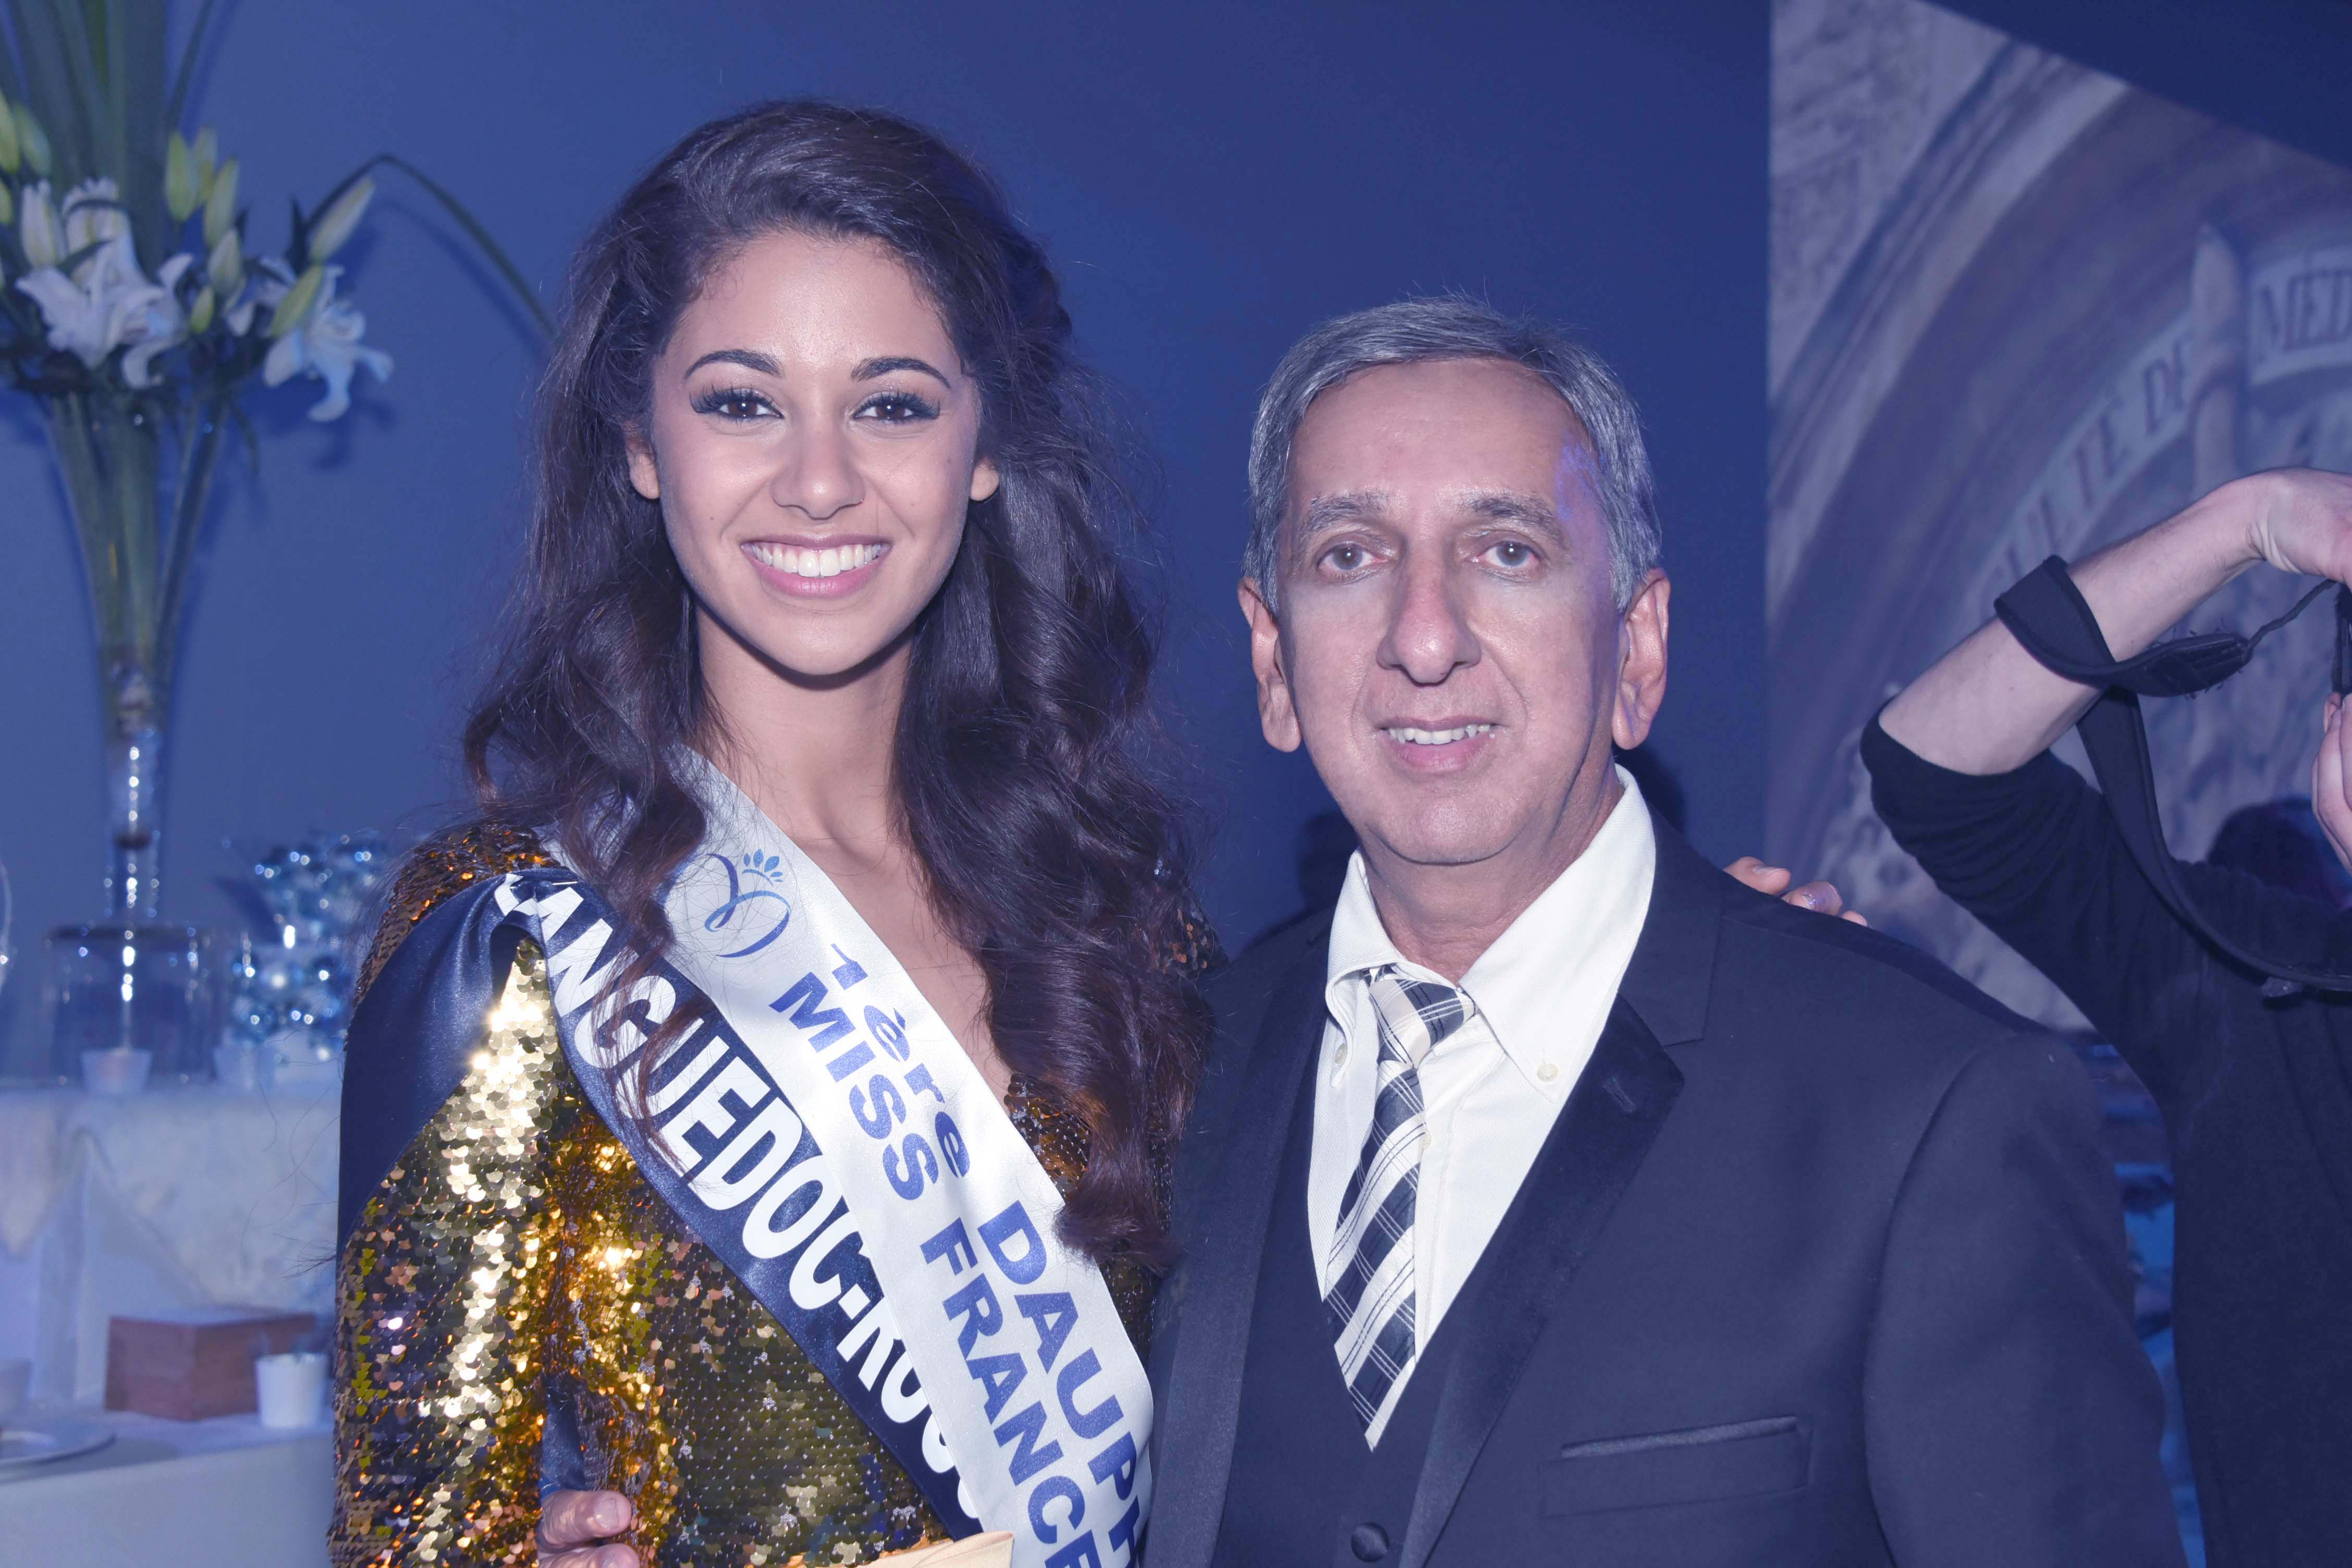 Aurore Kichenin, Miss Languedoc-Roussillon, et 1ère dauphine Miss France 2017, et Aziz Patel